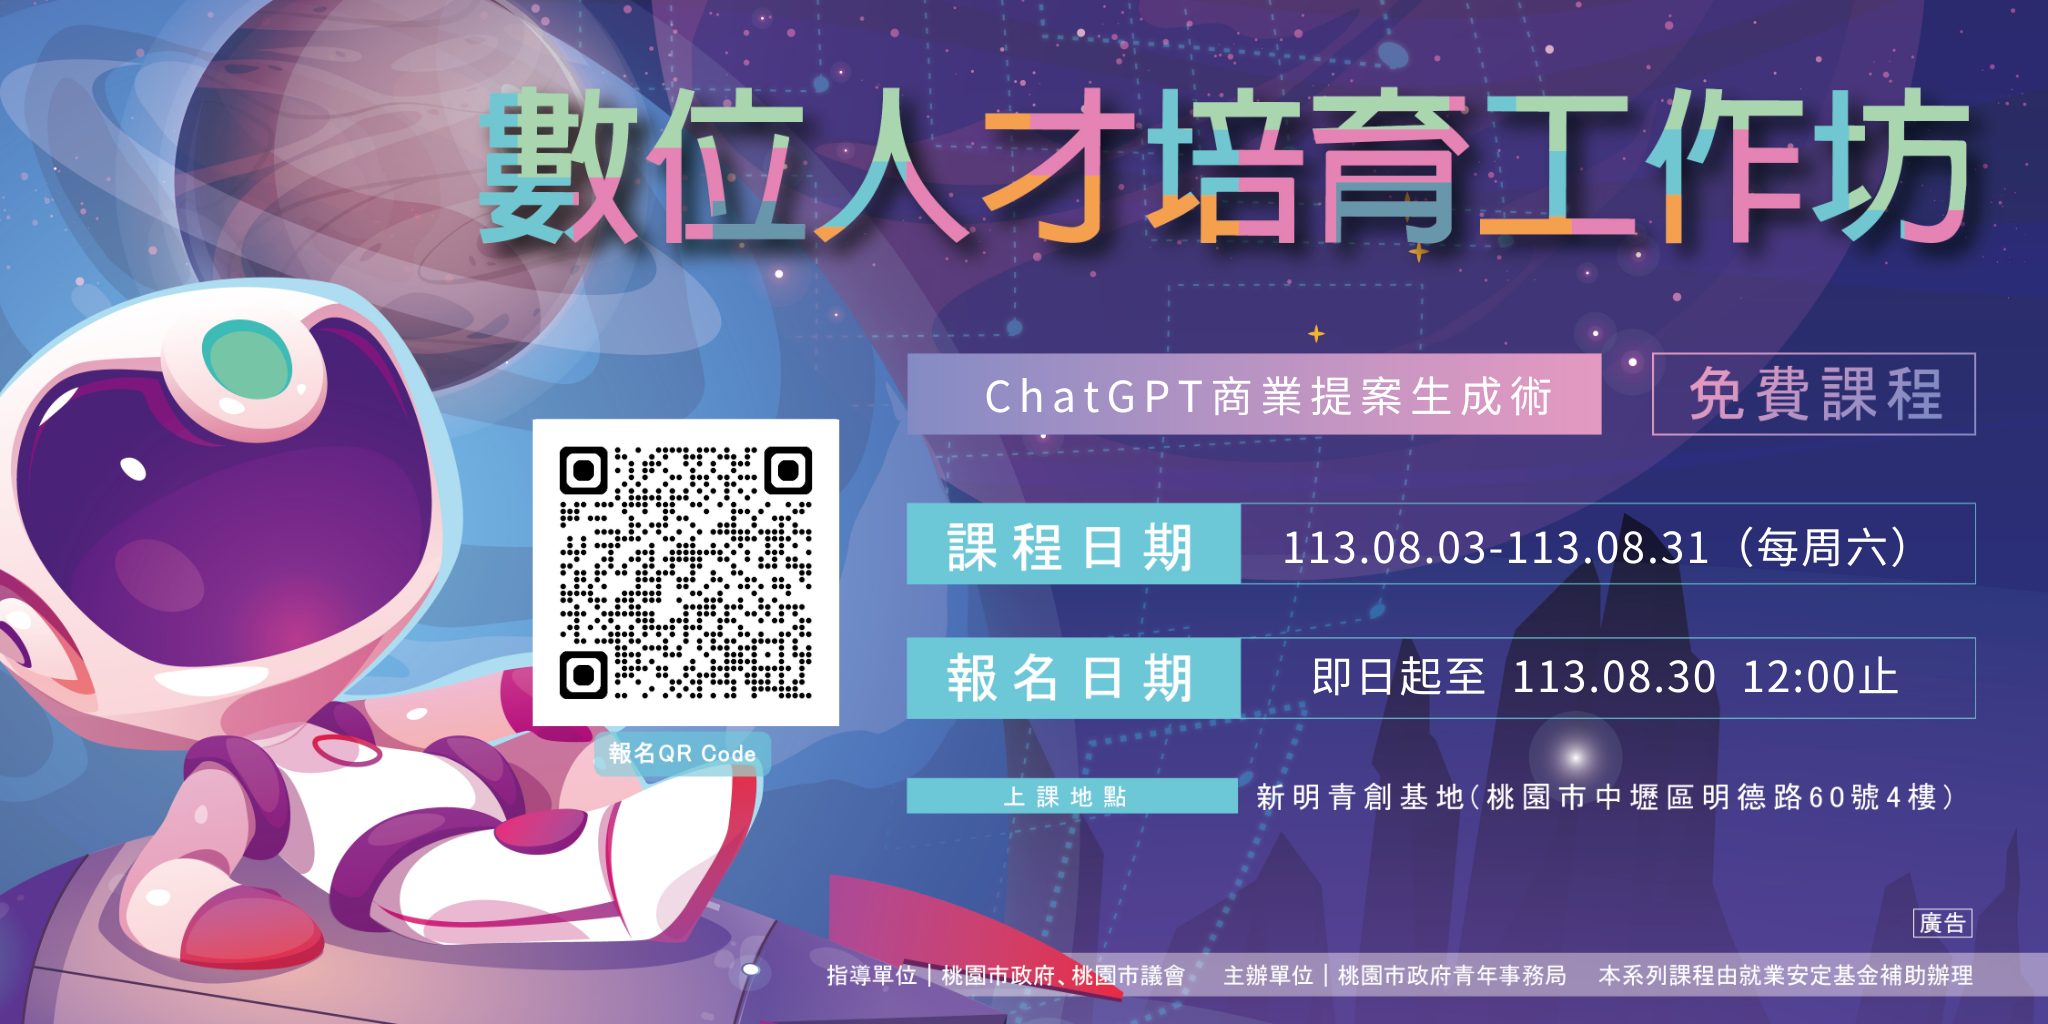 【新明青創基地】數位人才培育工作坊#10:ChatGPT商業提案生成術